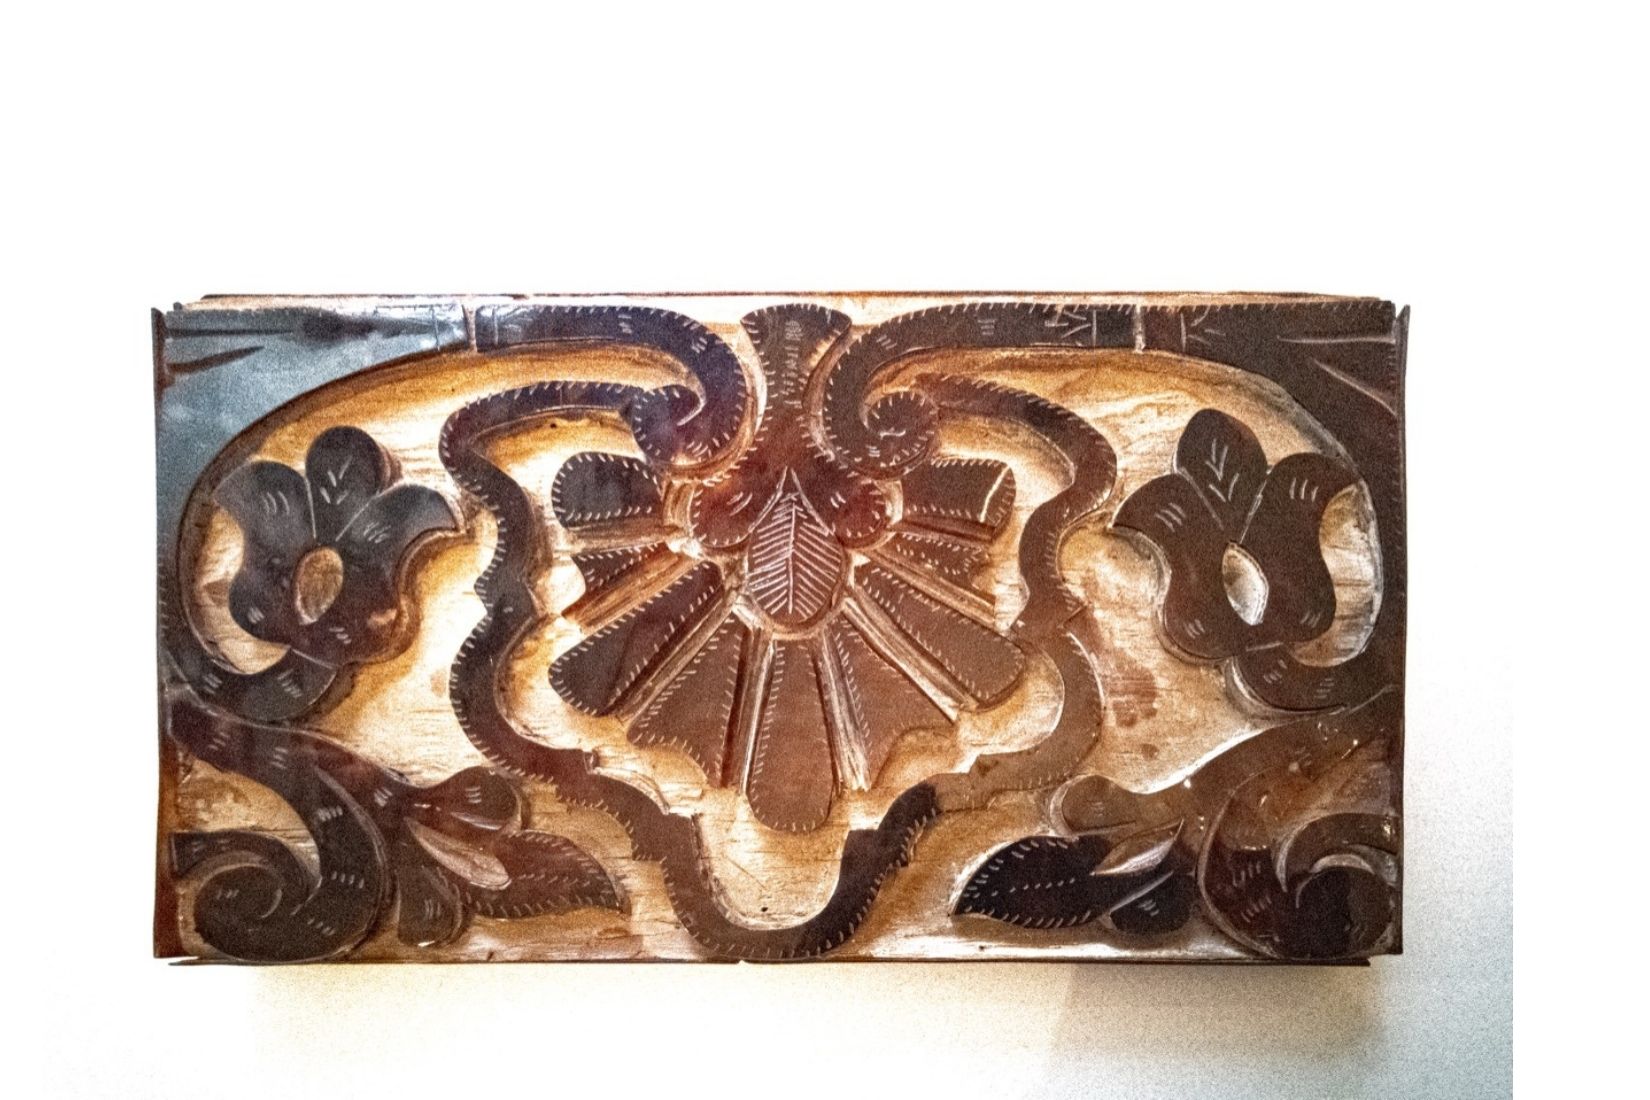 Interior de caja antigua de madera con incrustación de cuerno. Artesano desconocido. Veracruz. Col. Marie Thérèse Hermand de Arango. (Foto: Patricia Suárez).